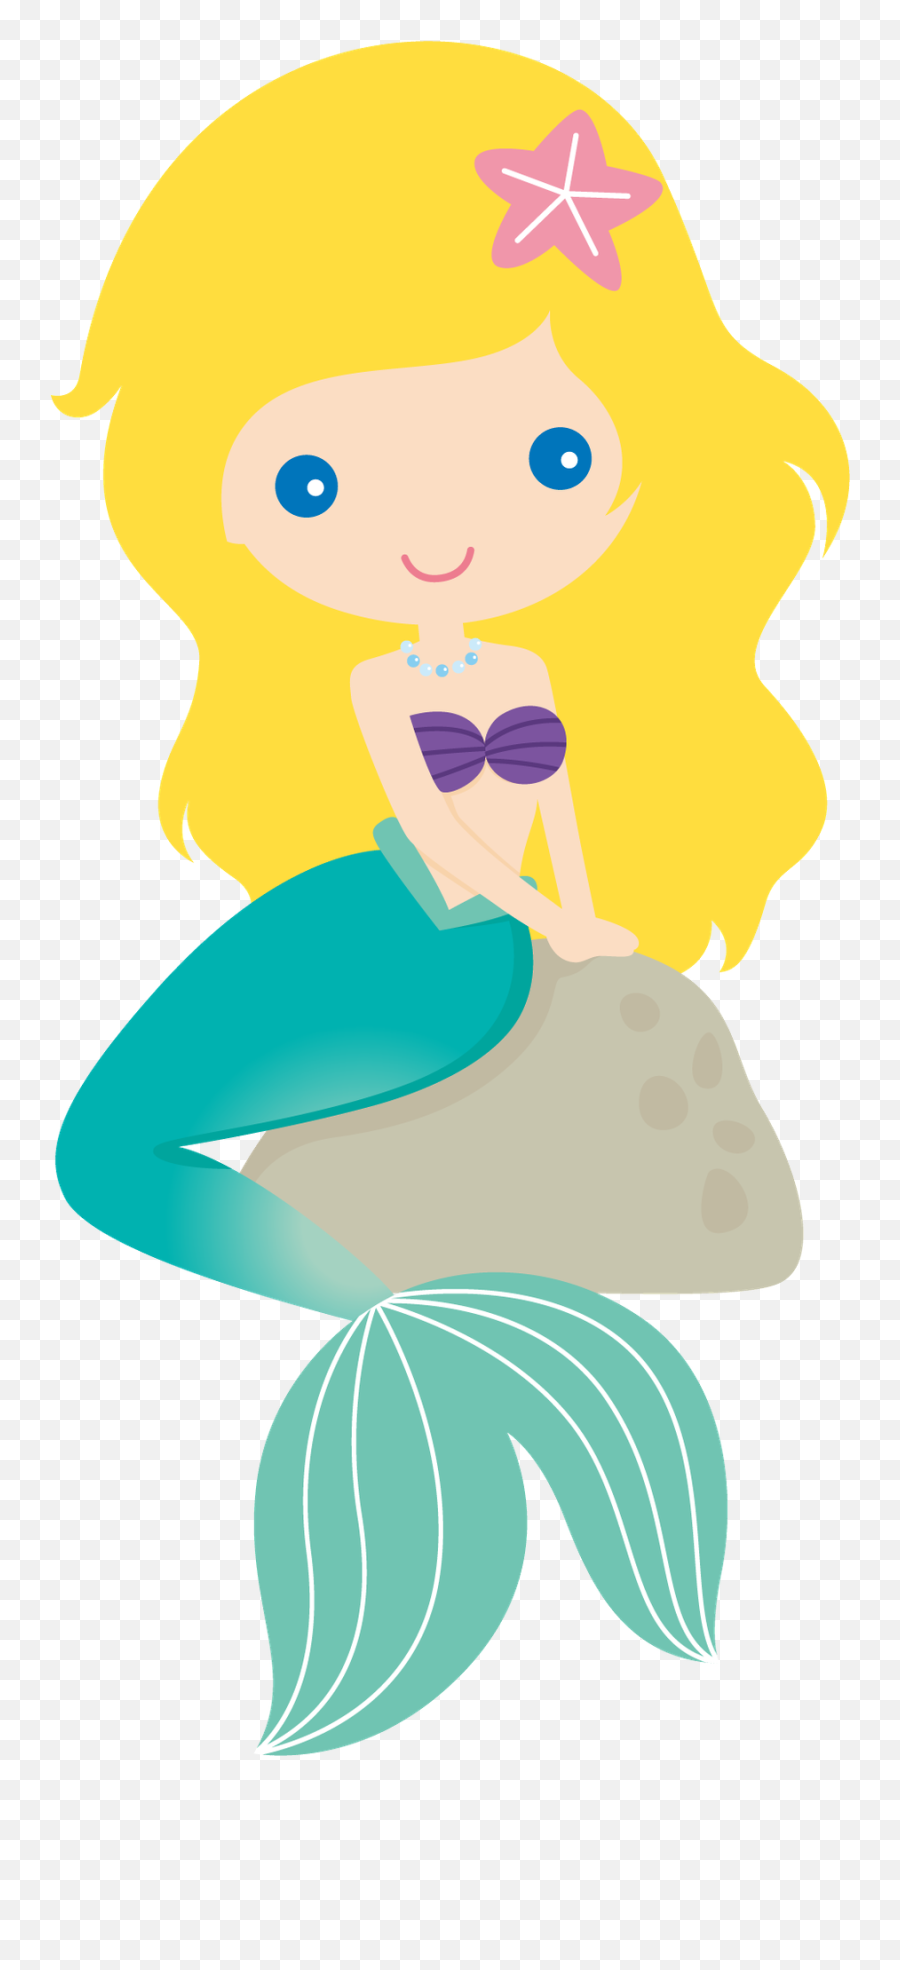 Free Png The Little Mermaid - Konfest,Mermaid Silhouette Png